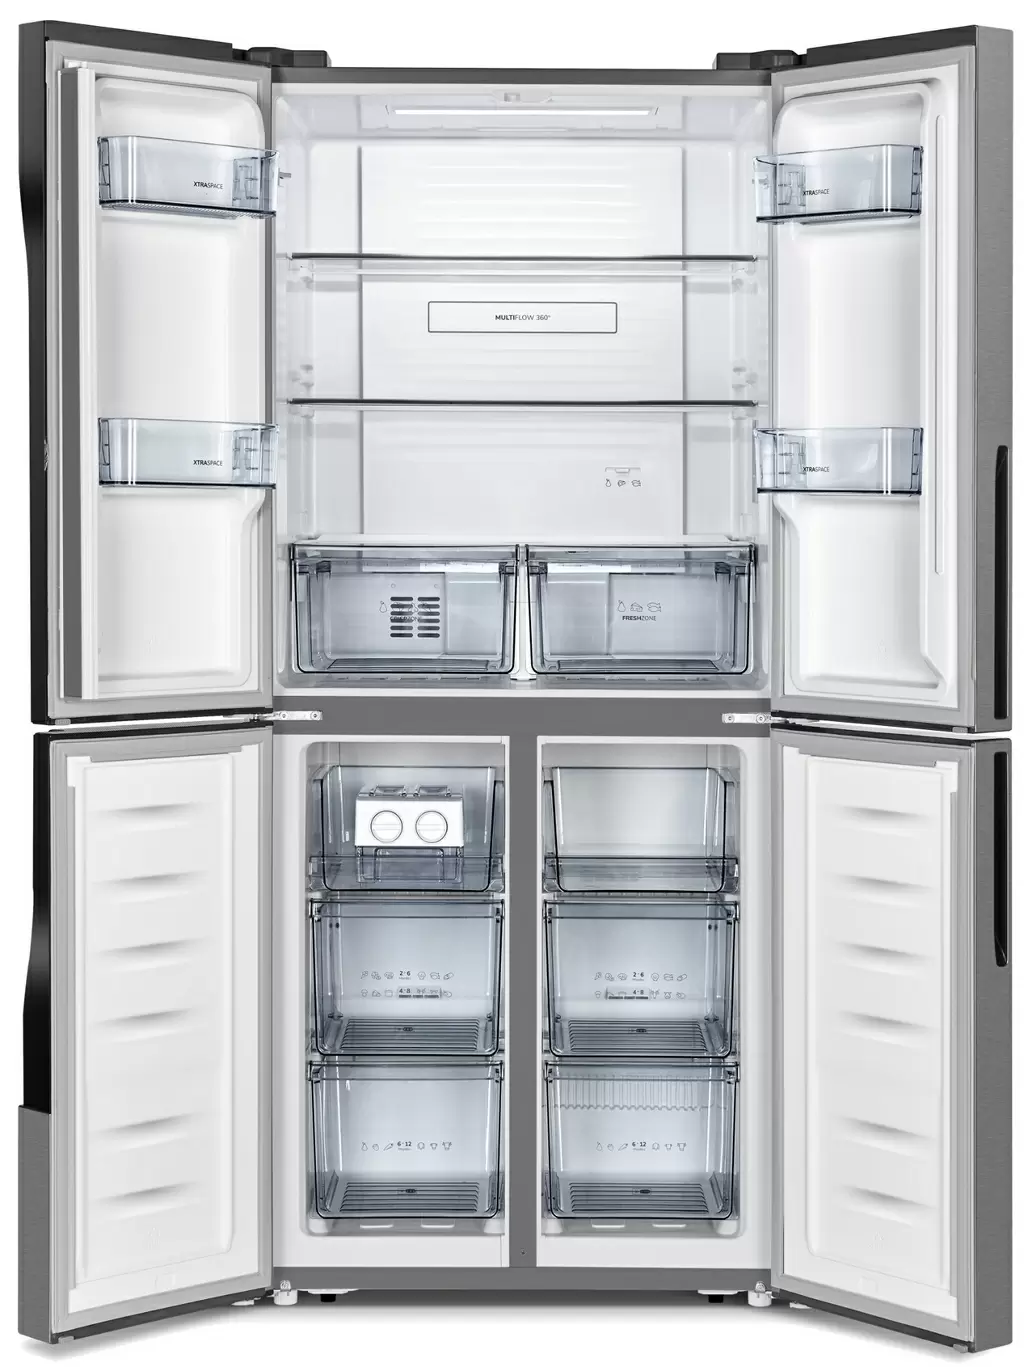 Холодильник Gorenje NRM8181MX, нержавеющая сталь